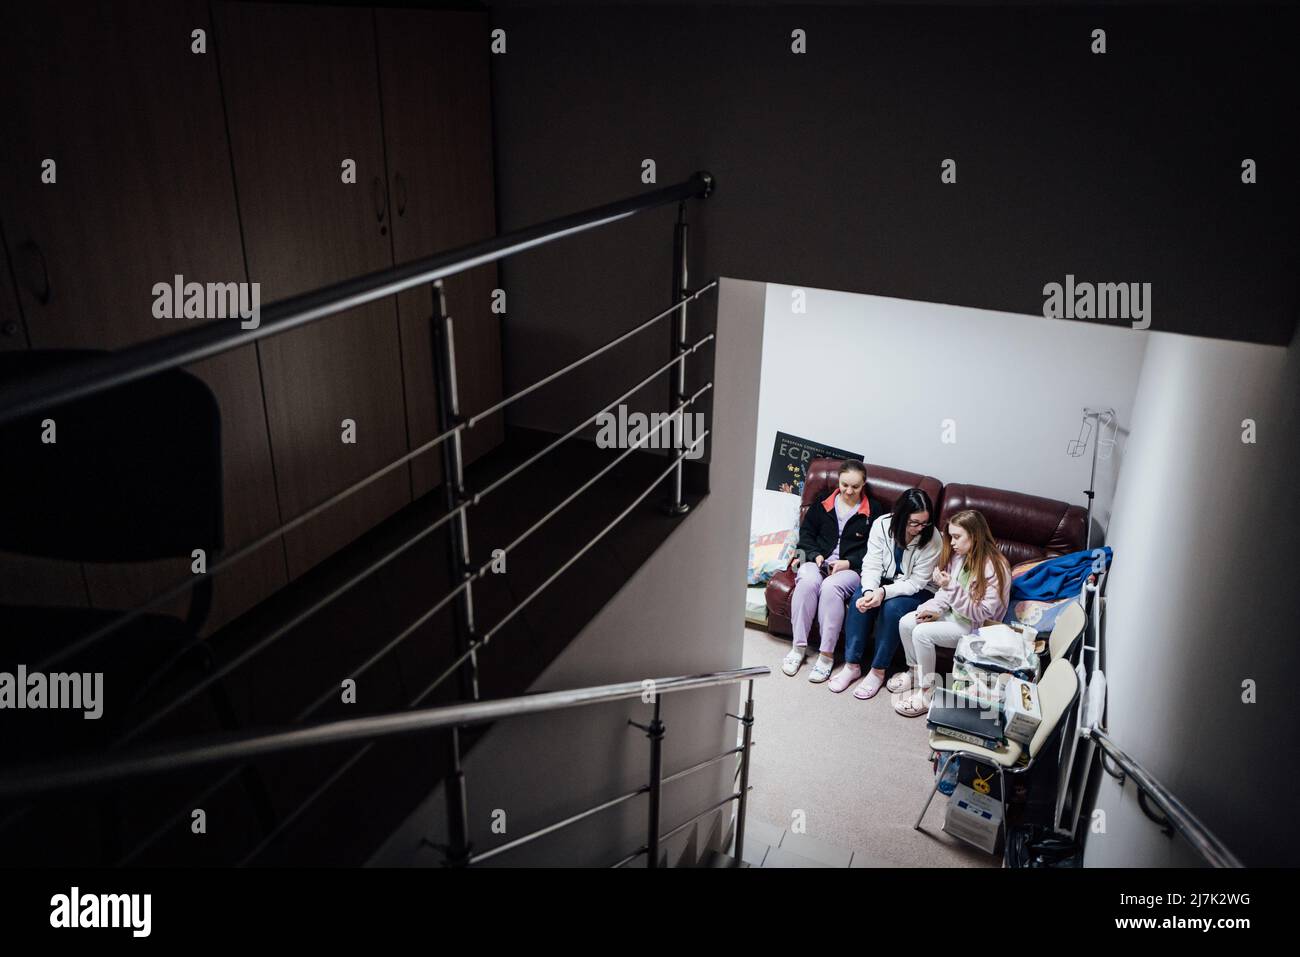 Adrien Vautier / Le Pictorium - Russische Invasion in der Ukraine, Kiew bereitet sich vor - 3/3/2022 - Ukraine / Kiew - Eine Krankenschwester wird von ihrem Kollegen getröstet Stockfoto